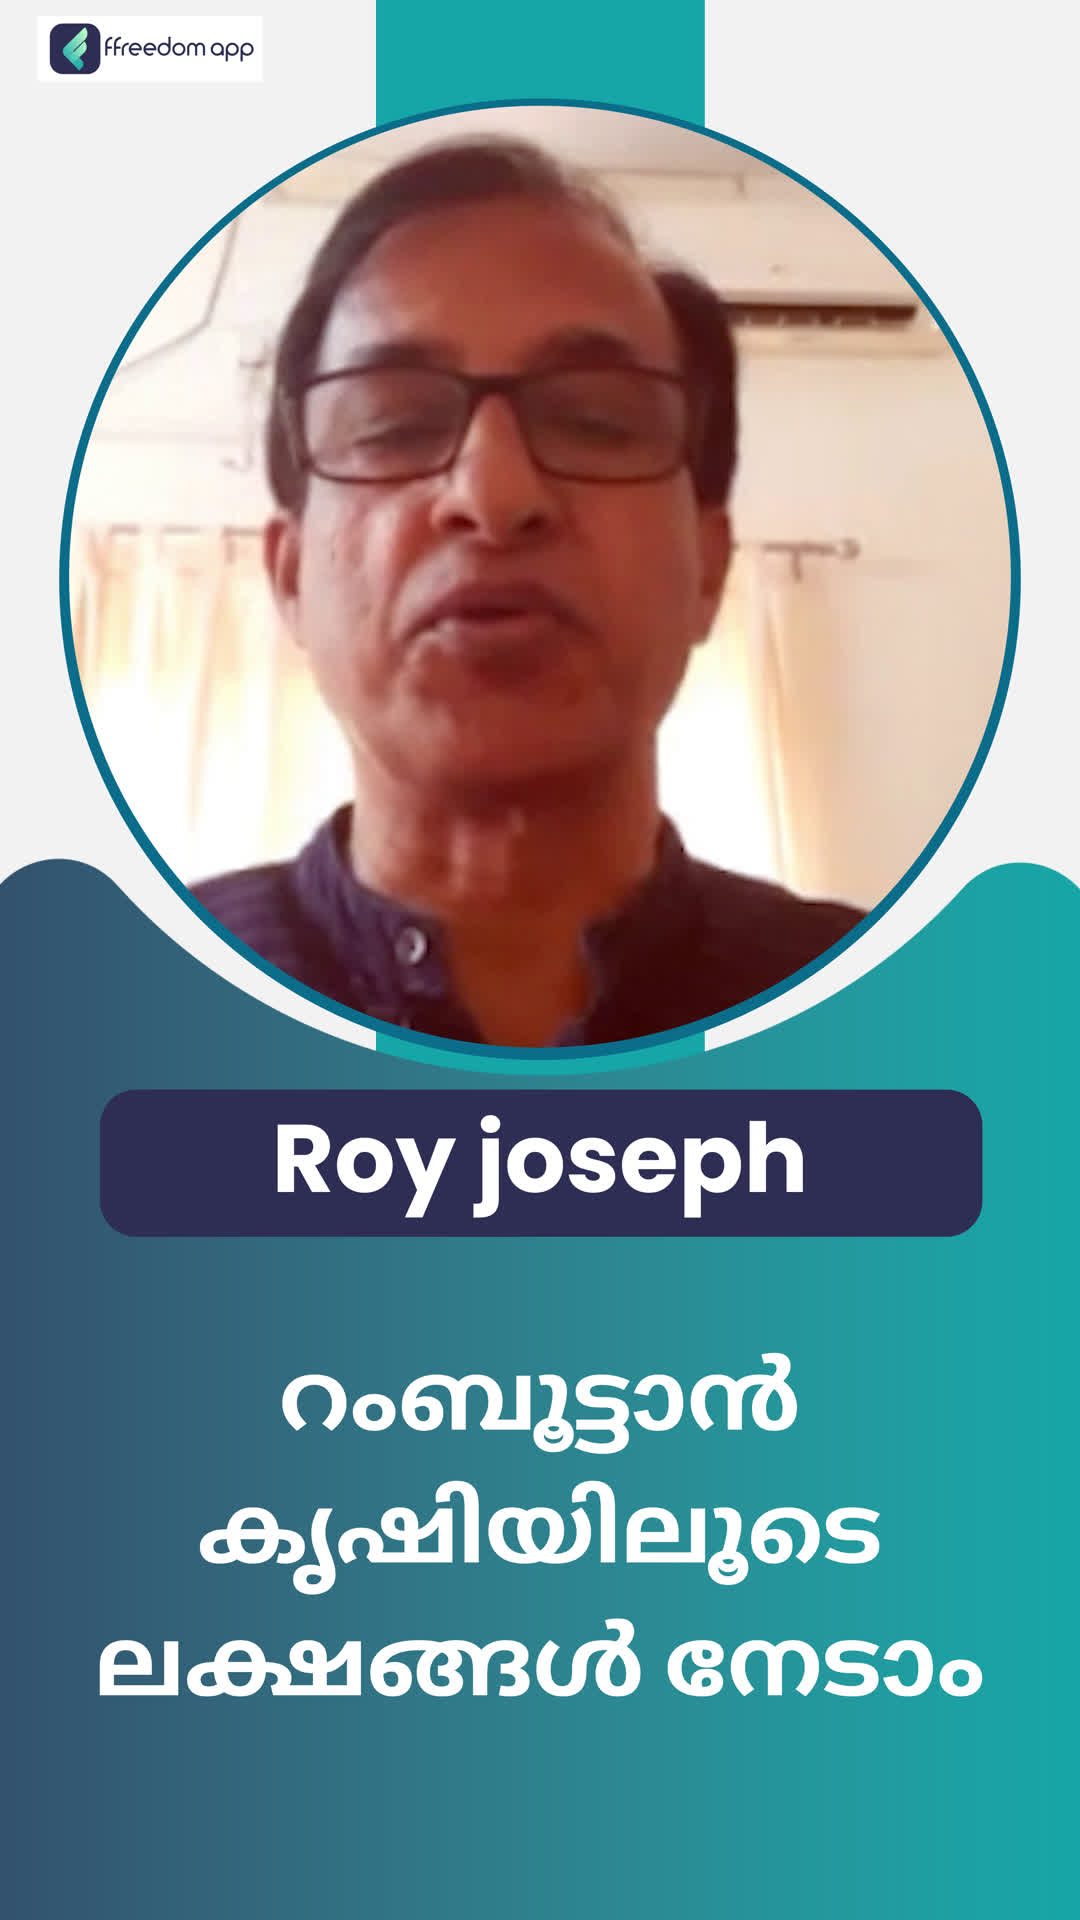 Roy joseph's Honest Review of ffreedom app - Ernakulam ,Kerala